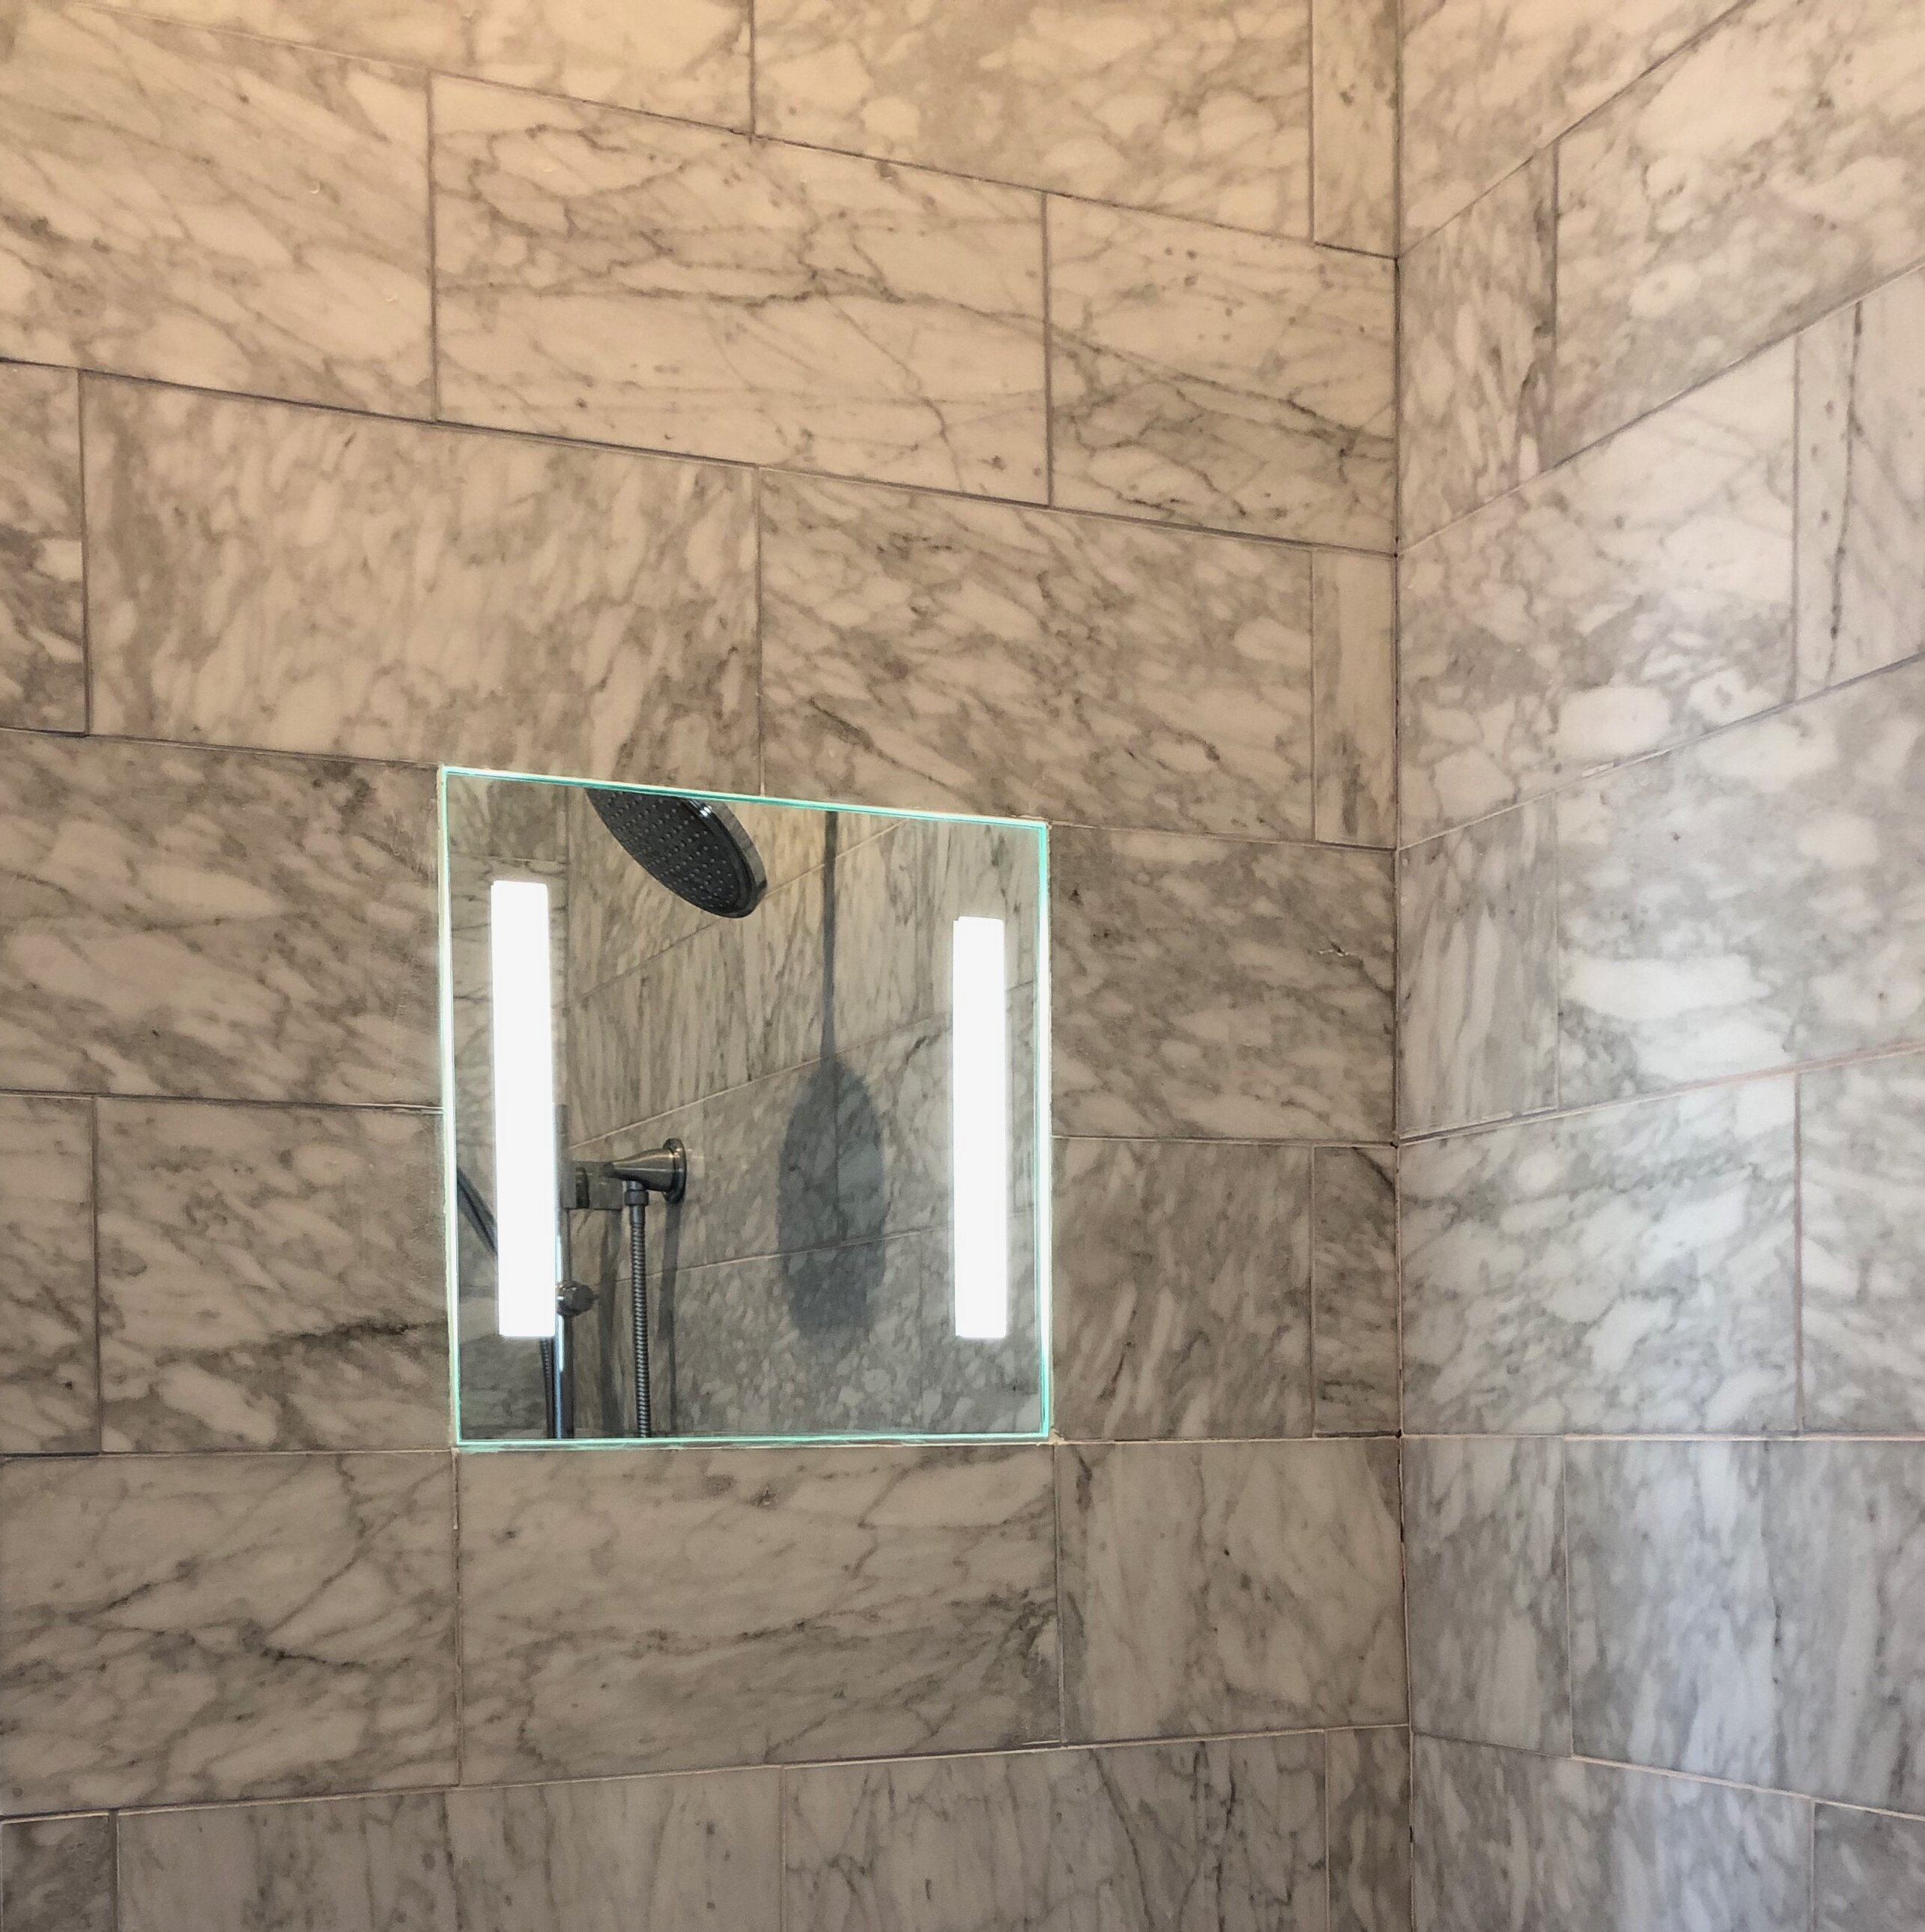 ShowerLite Fog Free Shower Mirror ClearMirror